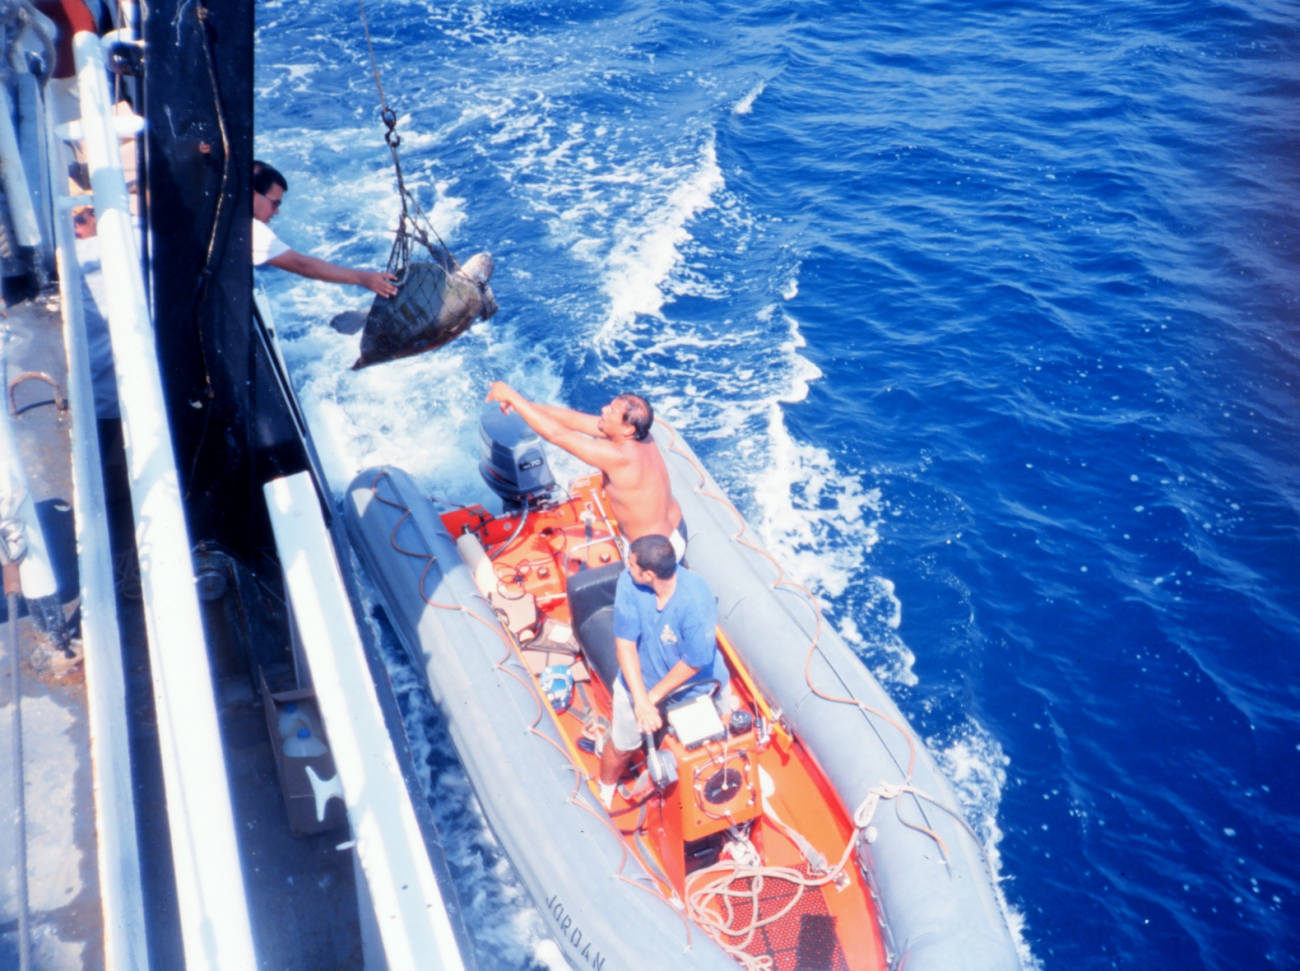 Launch alongside NOAA Ship DAVID STARR JORDAN passing marine turtle aboard for